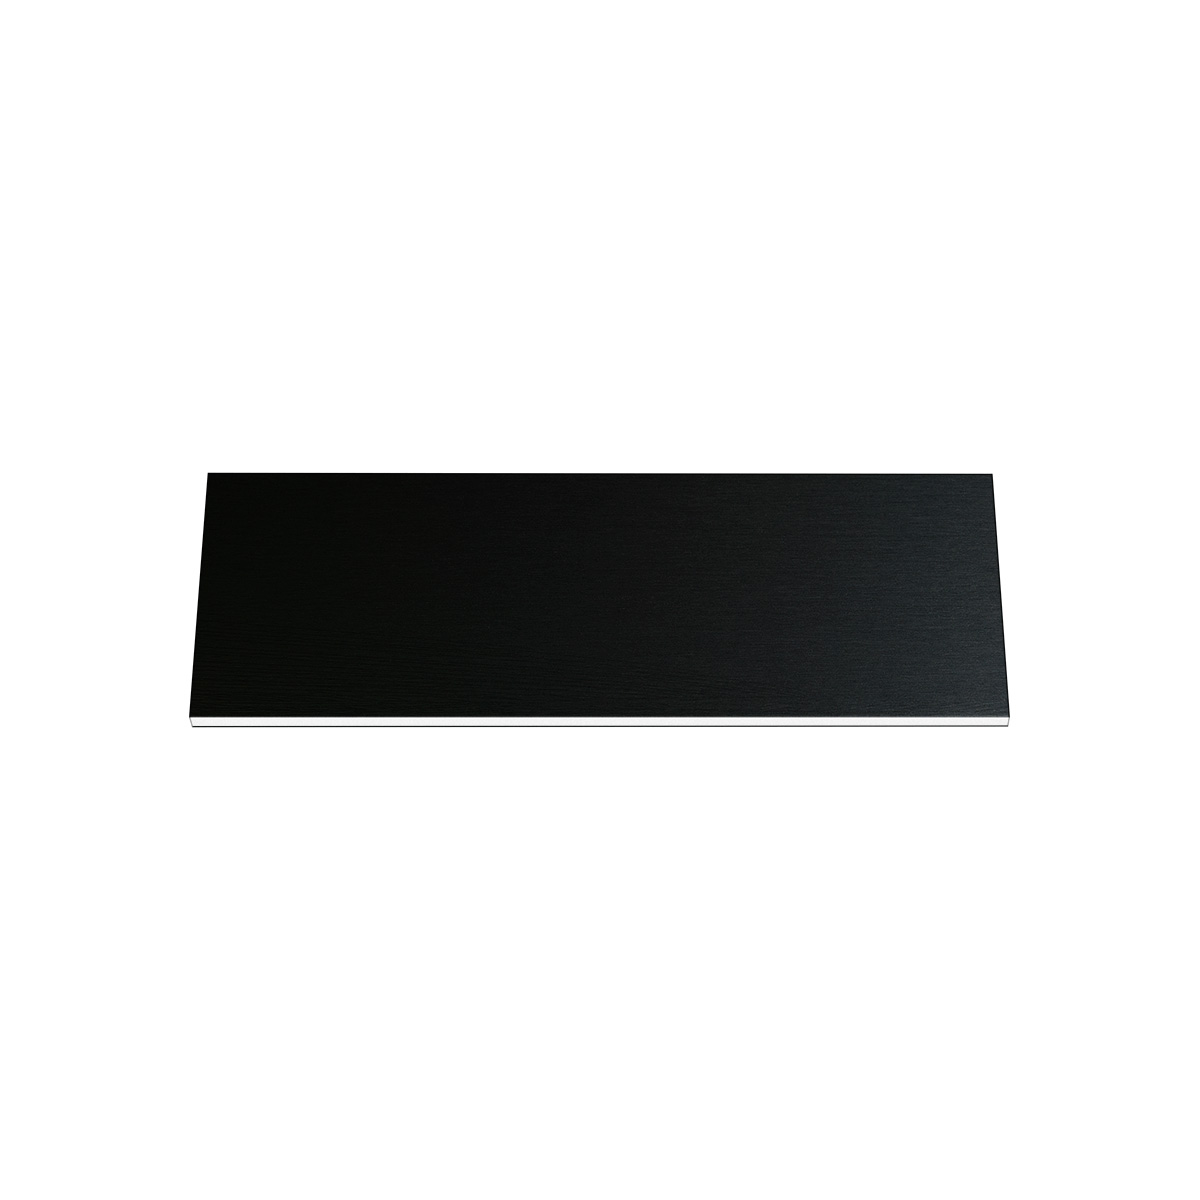 Plaque pour la gravure Resopal noir, rectangulaire 50 x 15 mm épaisseur 1,5 mm, avec colle